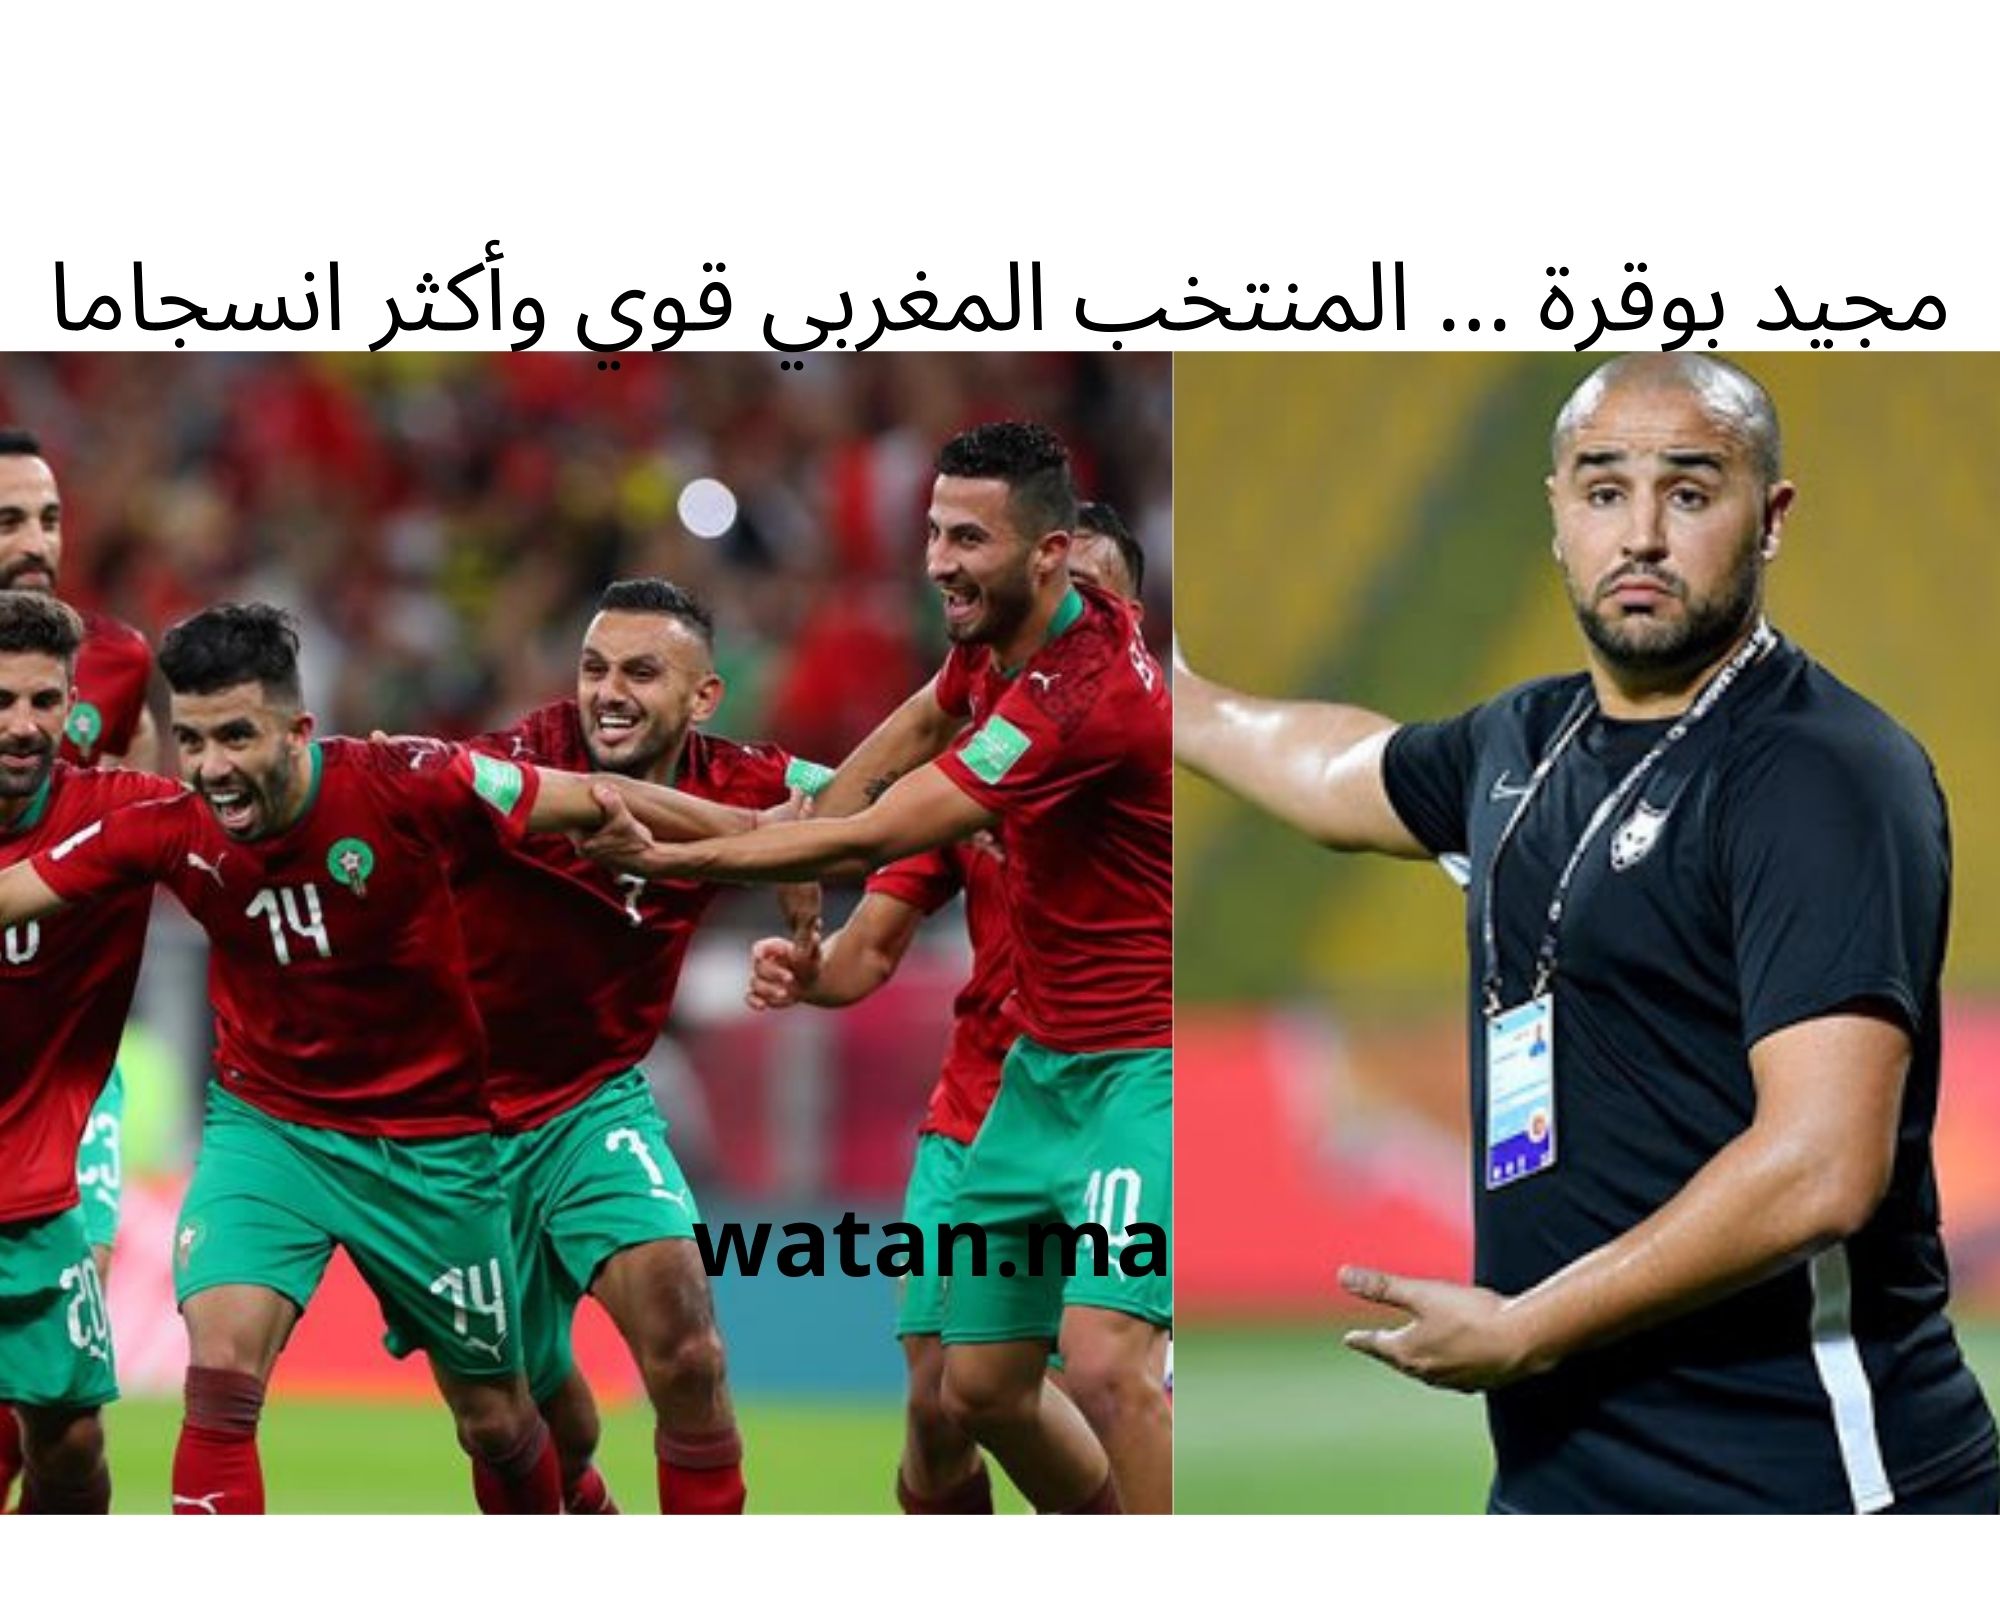 مجيد بوقرة … المنتخب المغربي قوي وأكثر انسجاما